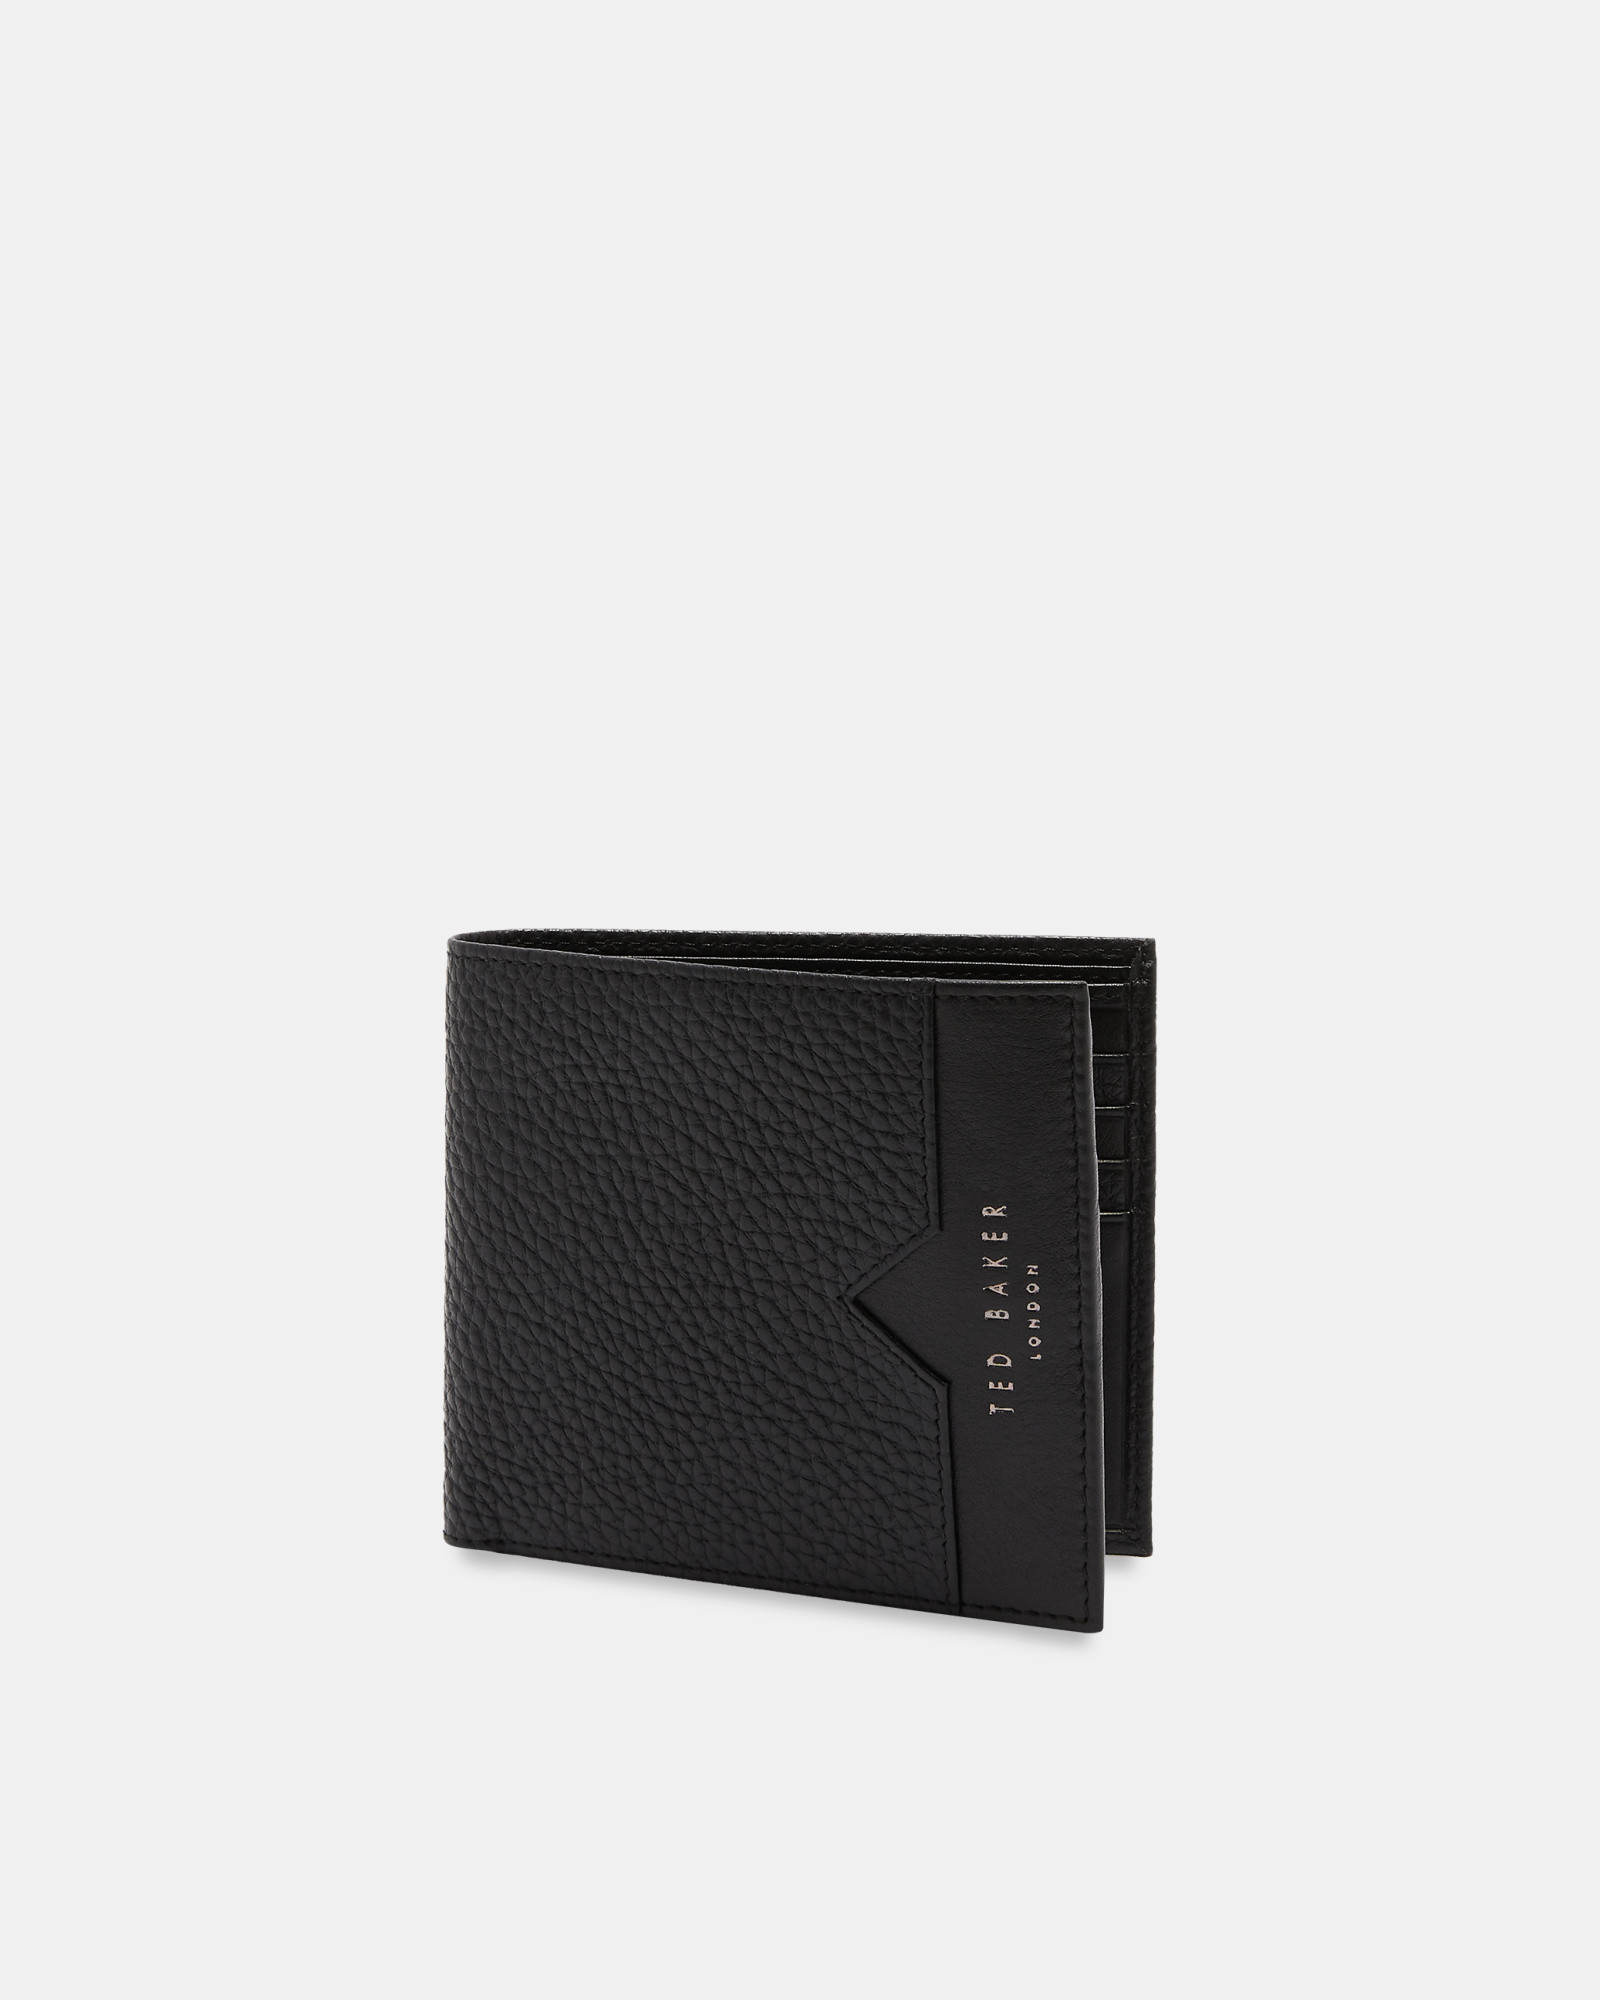 LOOEZE Leather bifold wallet